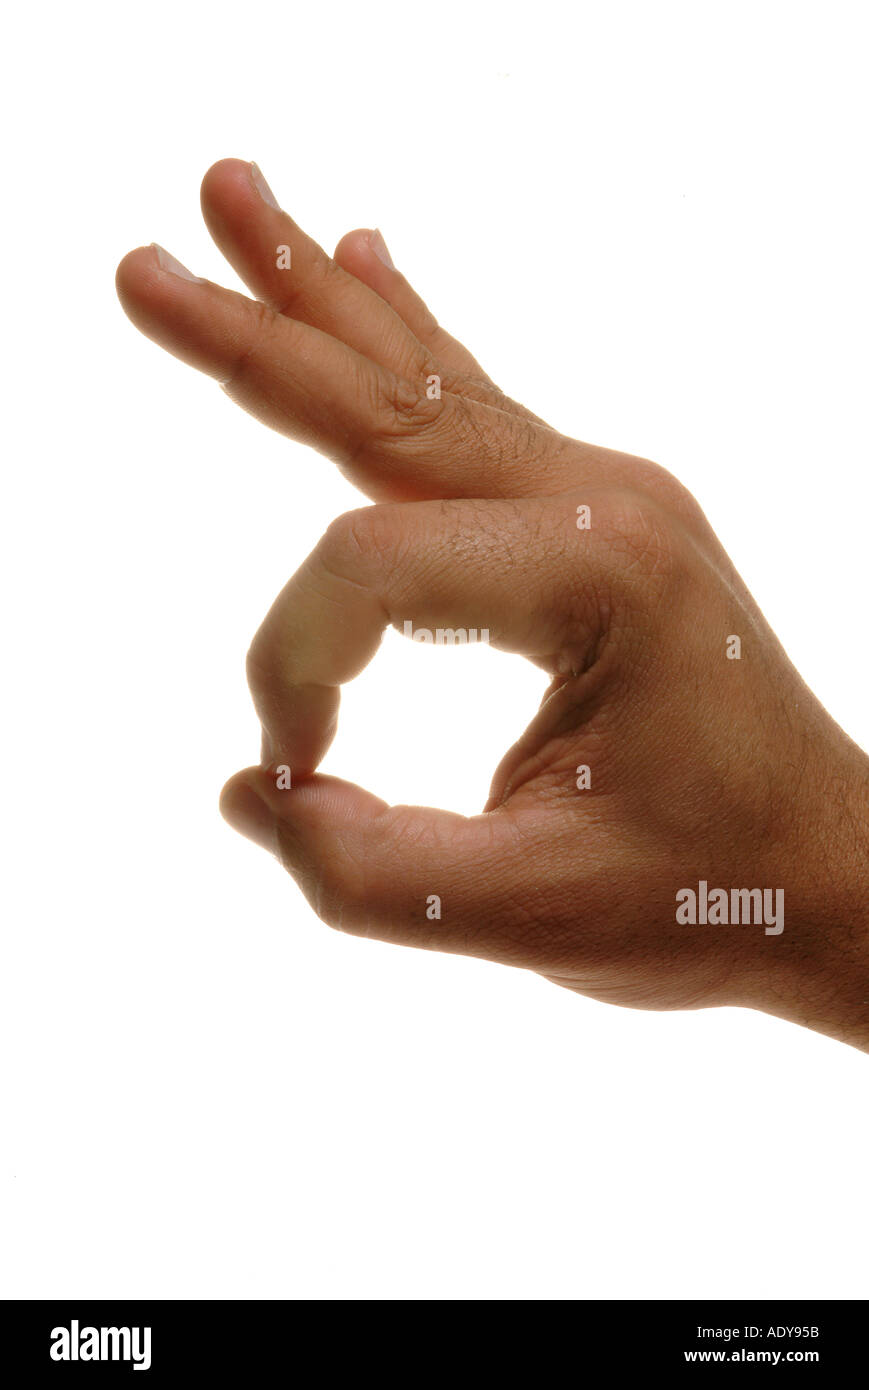 Händen Person Menschen hand Finger Finger Handgelenk Daumen Daumen Nägel  Lebensader weißes Schild Haut Faust ok gut in Ordnung gut OK Loch rabb  Stockfotografie - Alamy